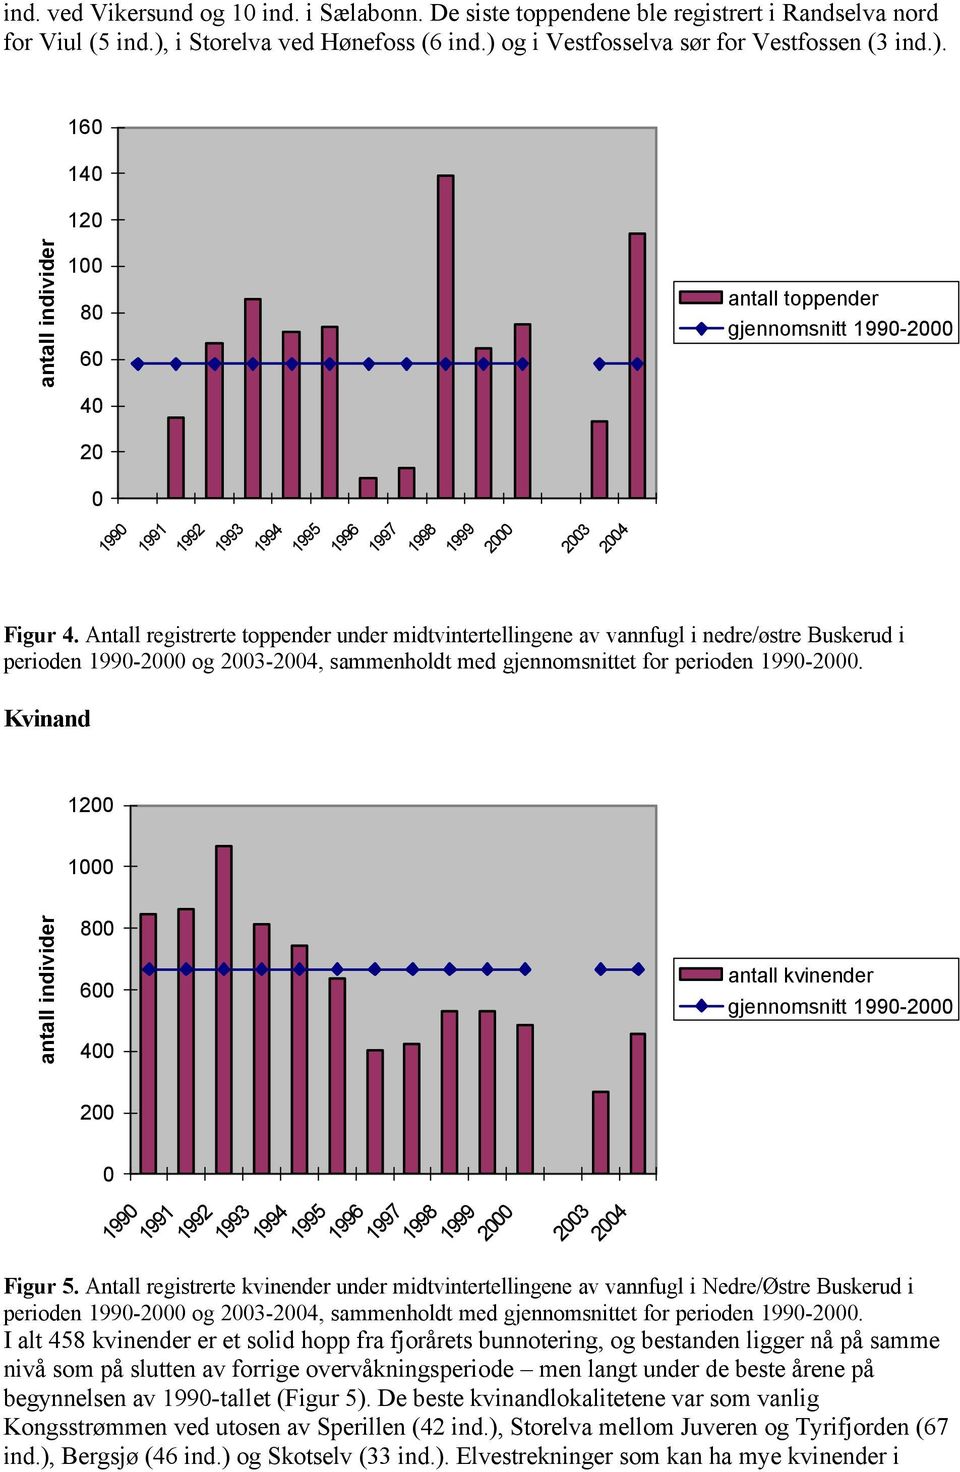 Antall registrerte toppender under midtvintertellingene av vannfugl i nedre/østre Buskerud i perioden 1990-2000 og 2003-2004, sammenholdt med gjennomsnittet for perioden 1990-2000.